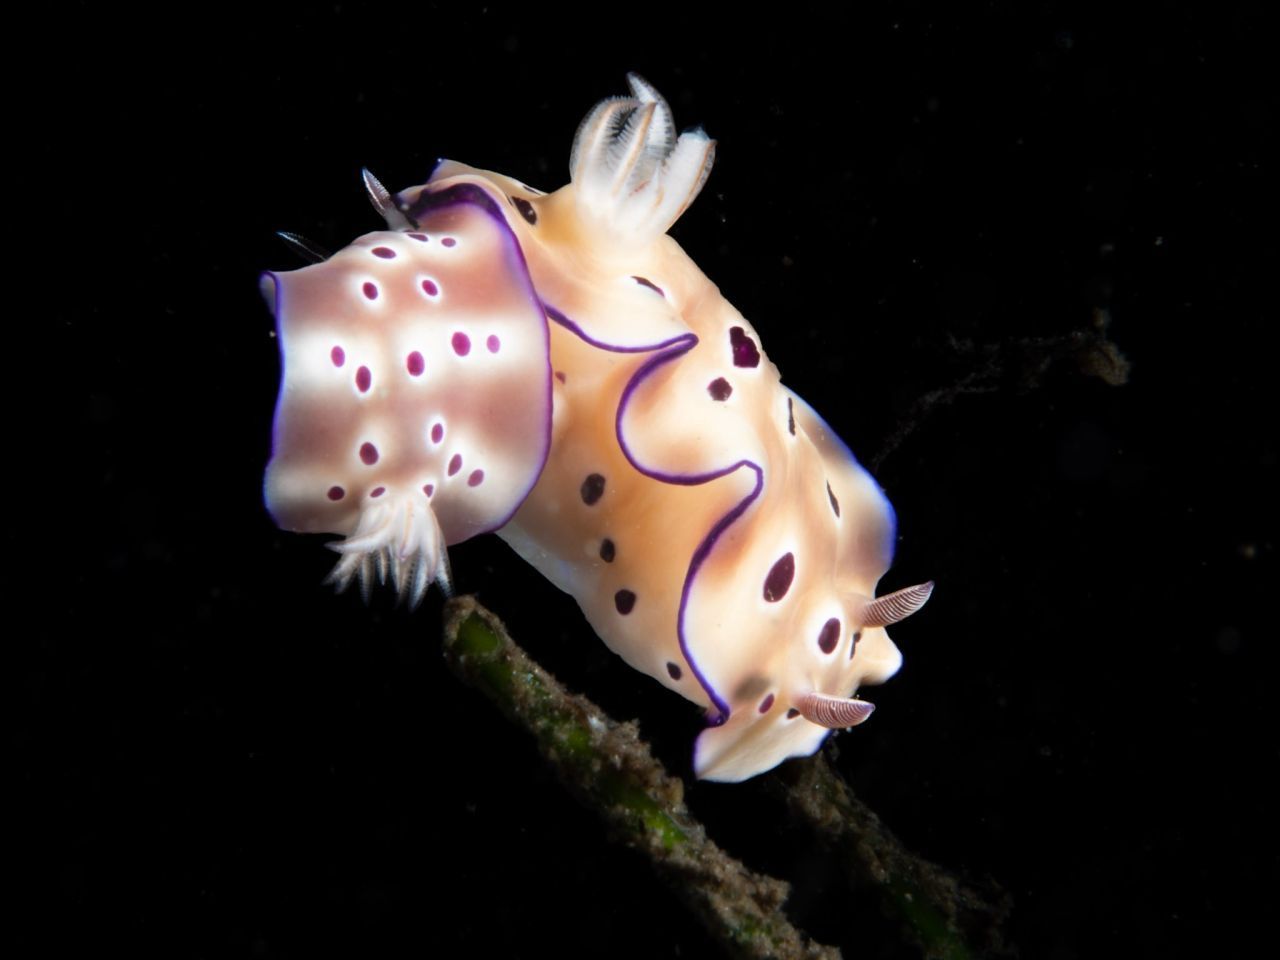 Nudibranchia, liebevoll auch "Nudis" genannt, sind nicht einfach nur Meeresnacktschnecken - sie sind die Stars der Makro-Unterwasser-Fotografie, die das kleine Leben mit einem riesigen Objektiv festhält.